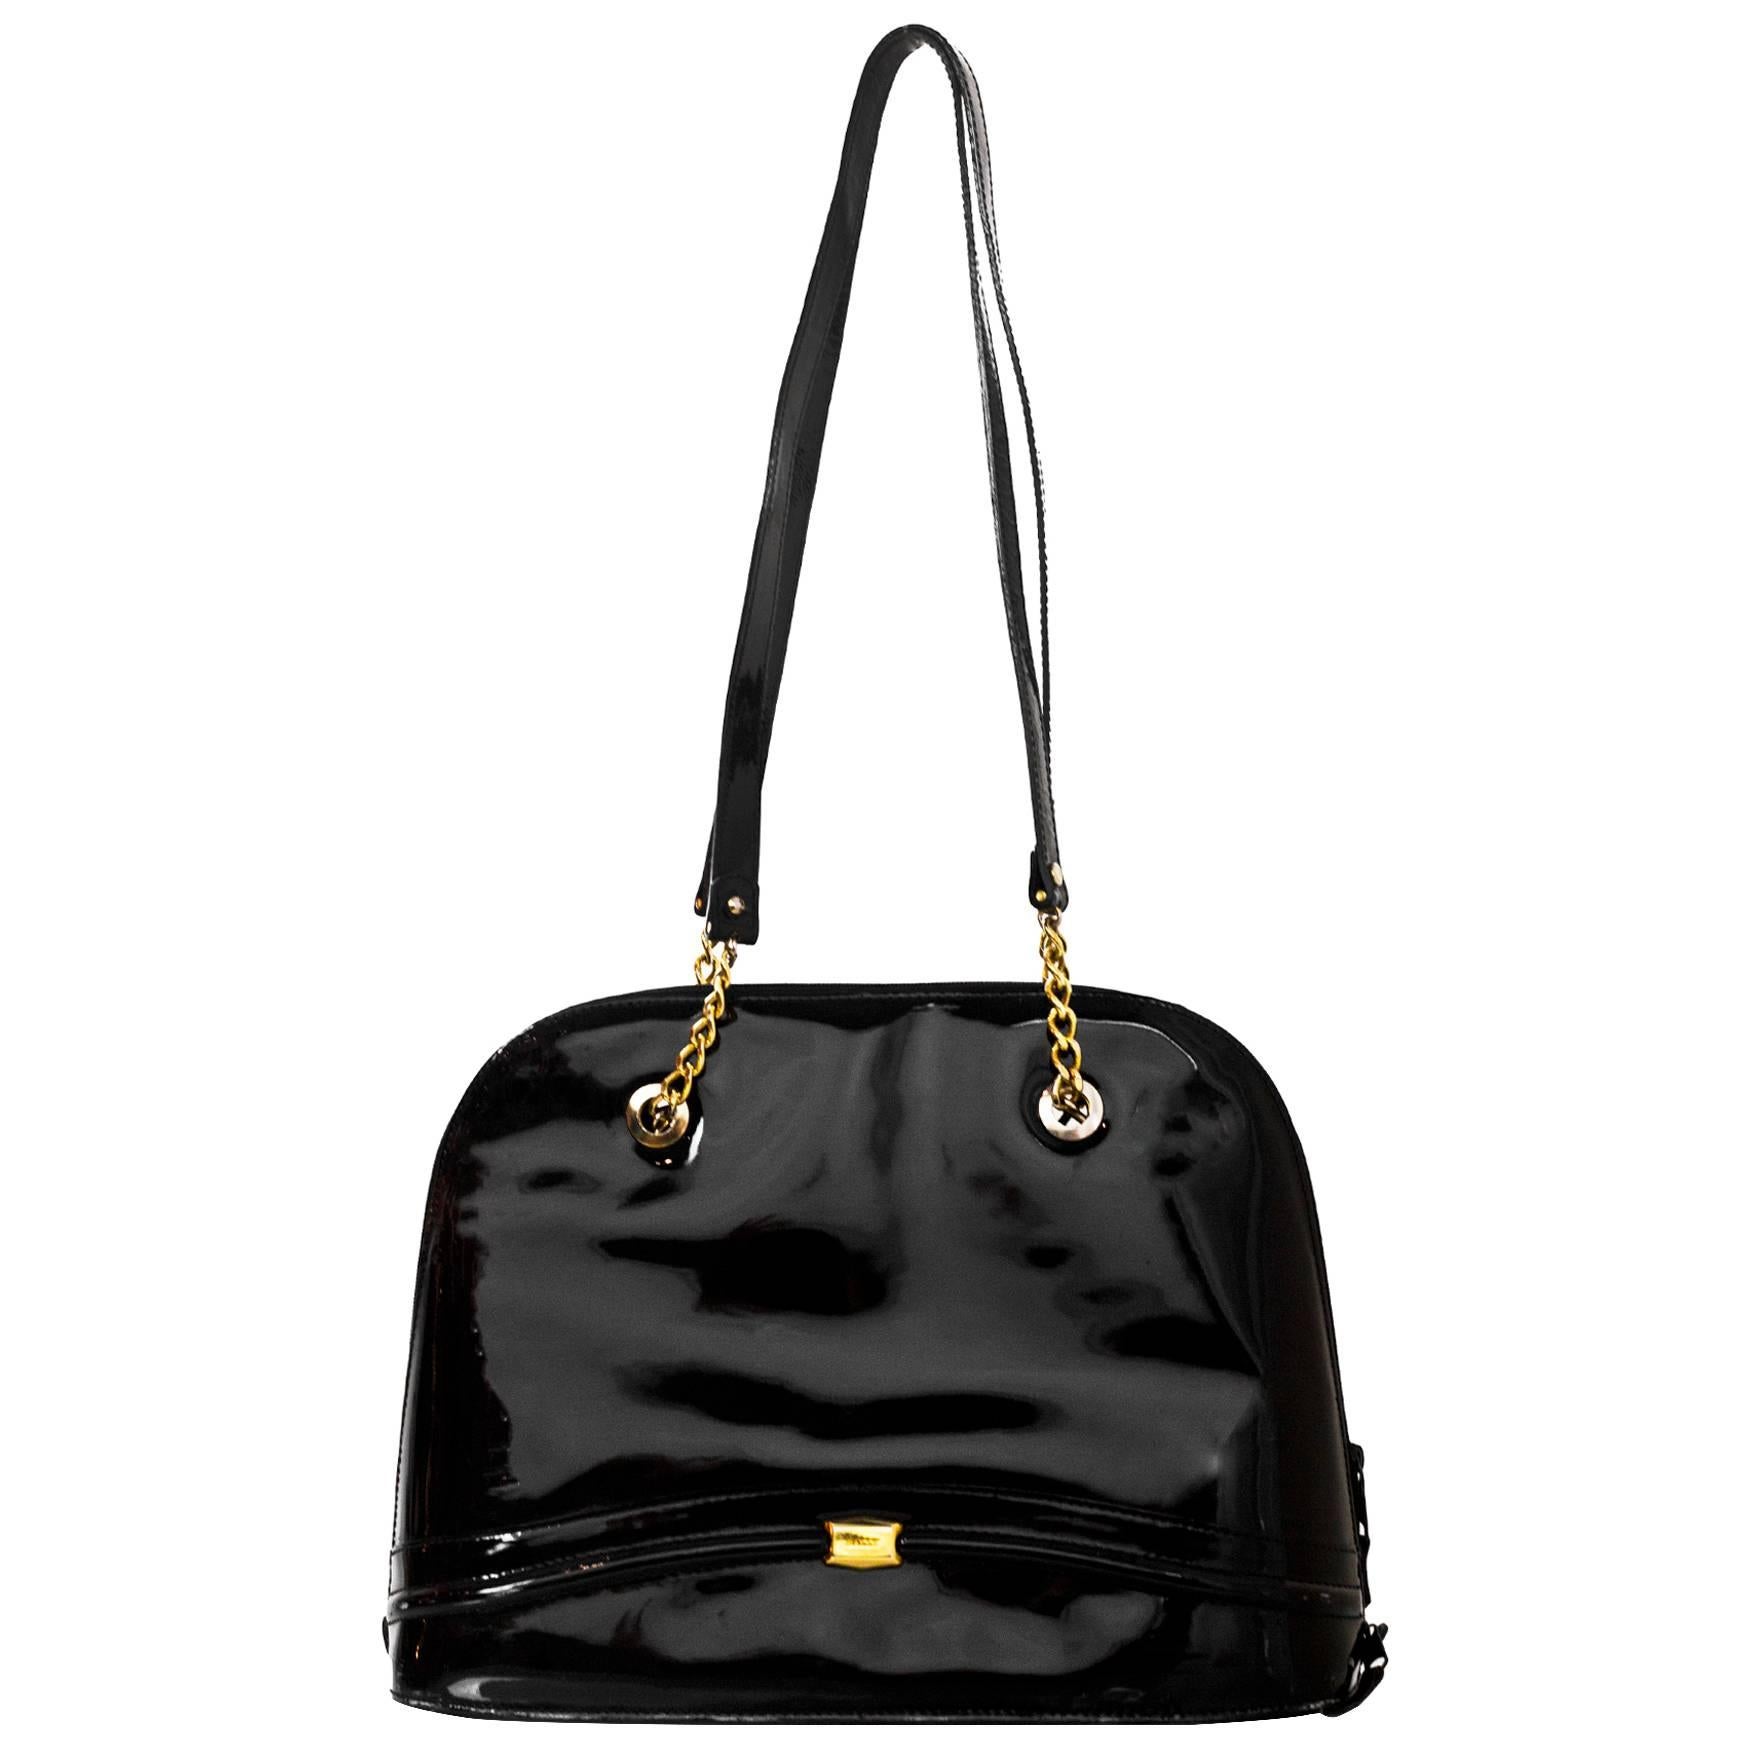 Bally Black Patent Leather Shoulder Bag